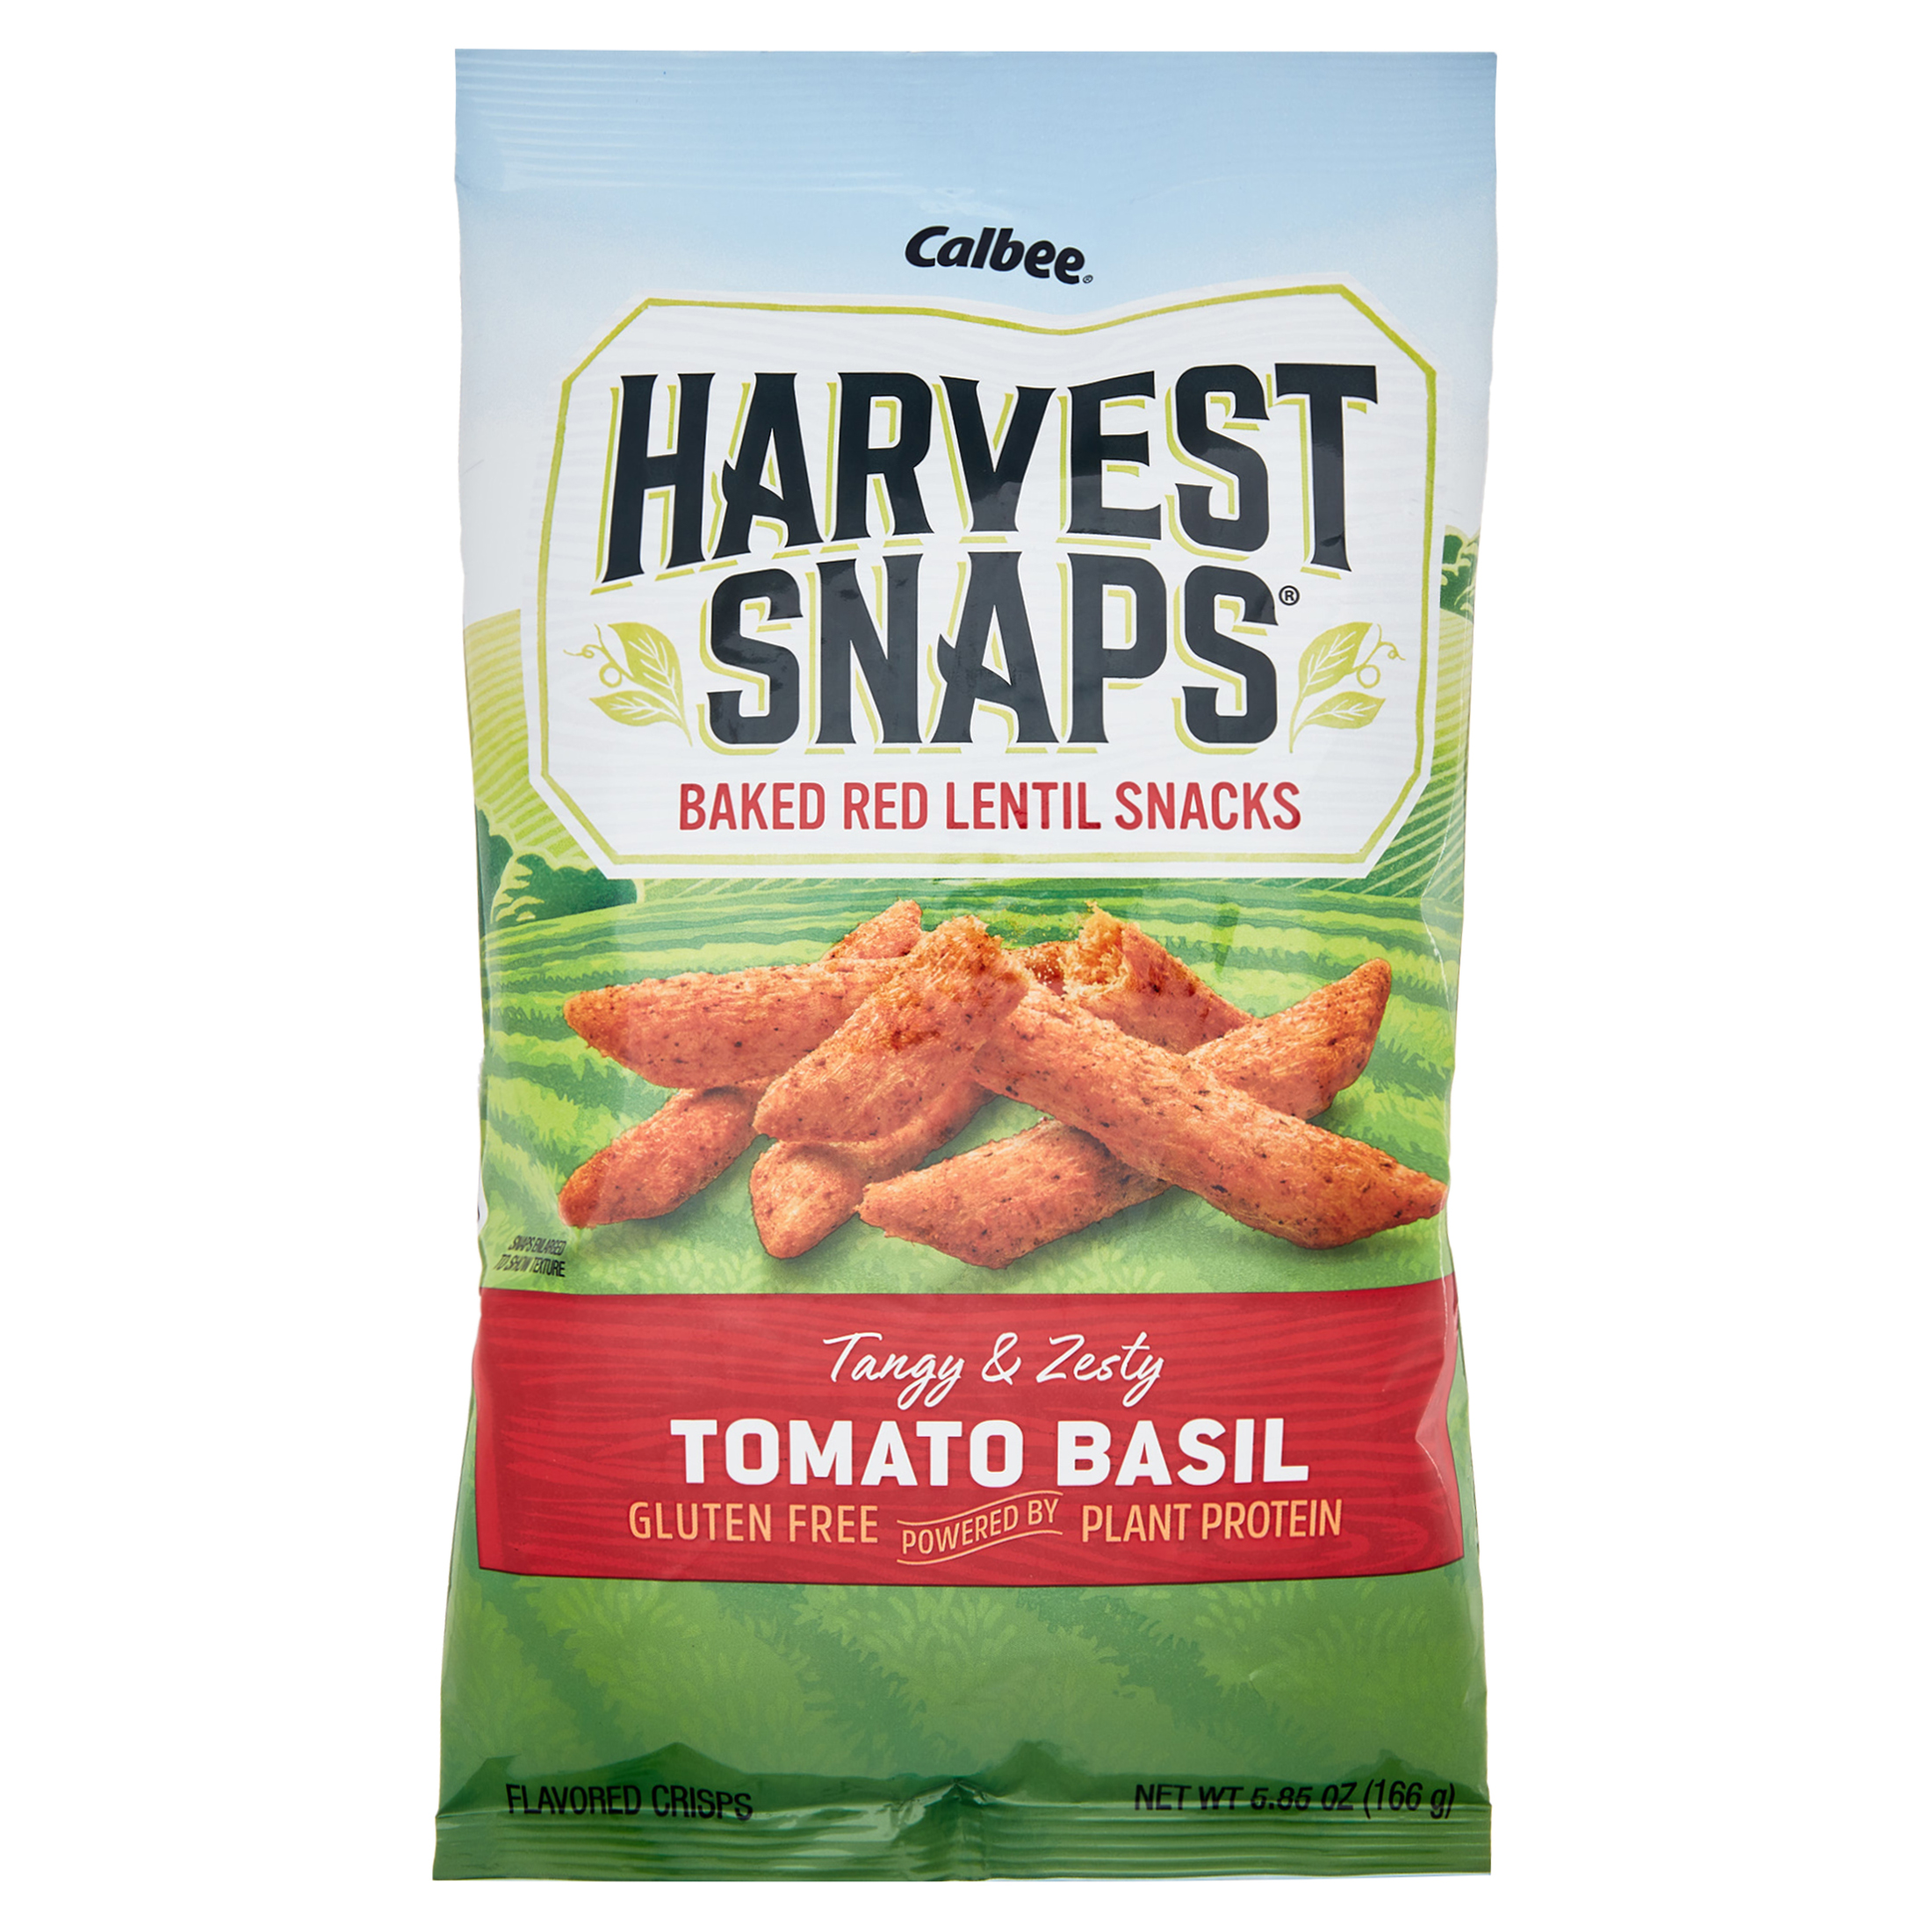 Harvest Snaps Baked Red Lentil Snacks, Tomato Basil Flavor, Gluten Free Veggie Crisps, 5.85 oz - image 1 of 6